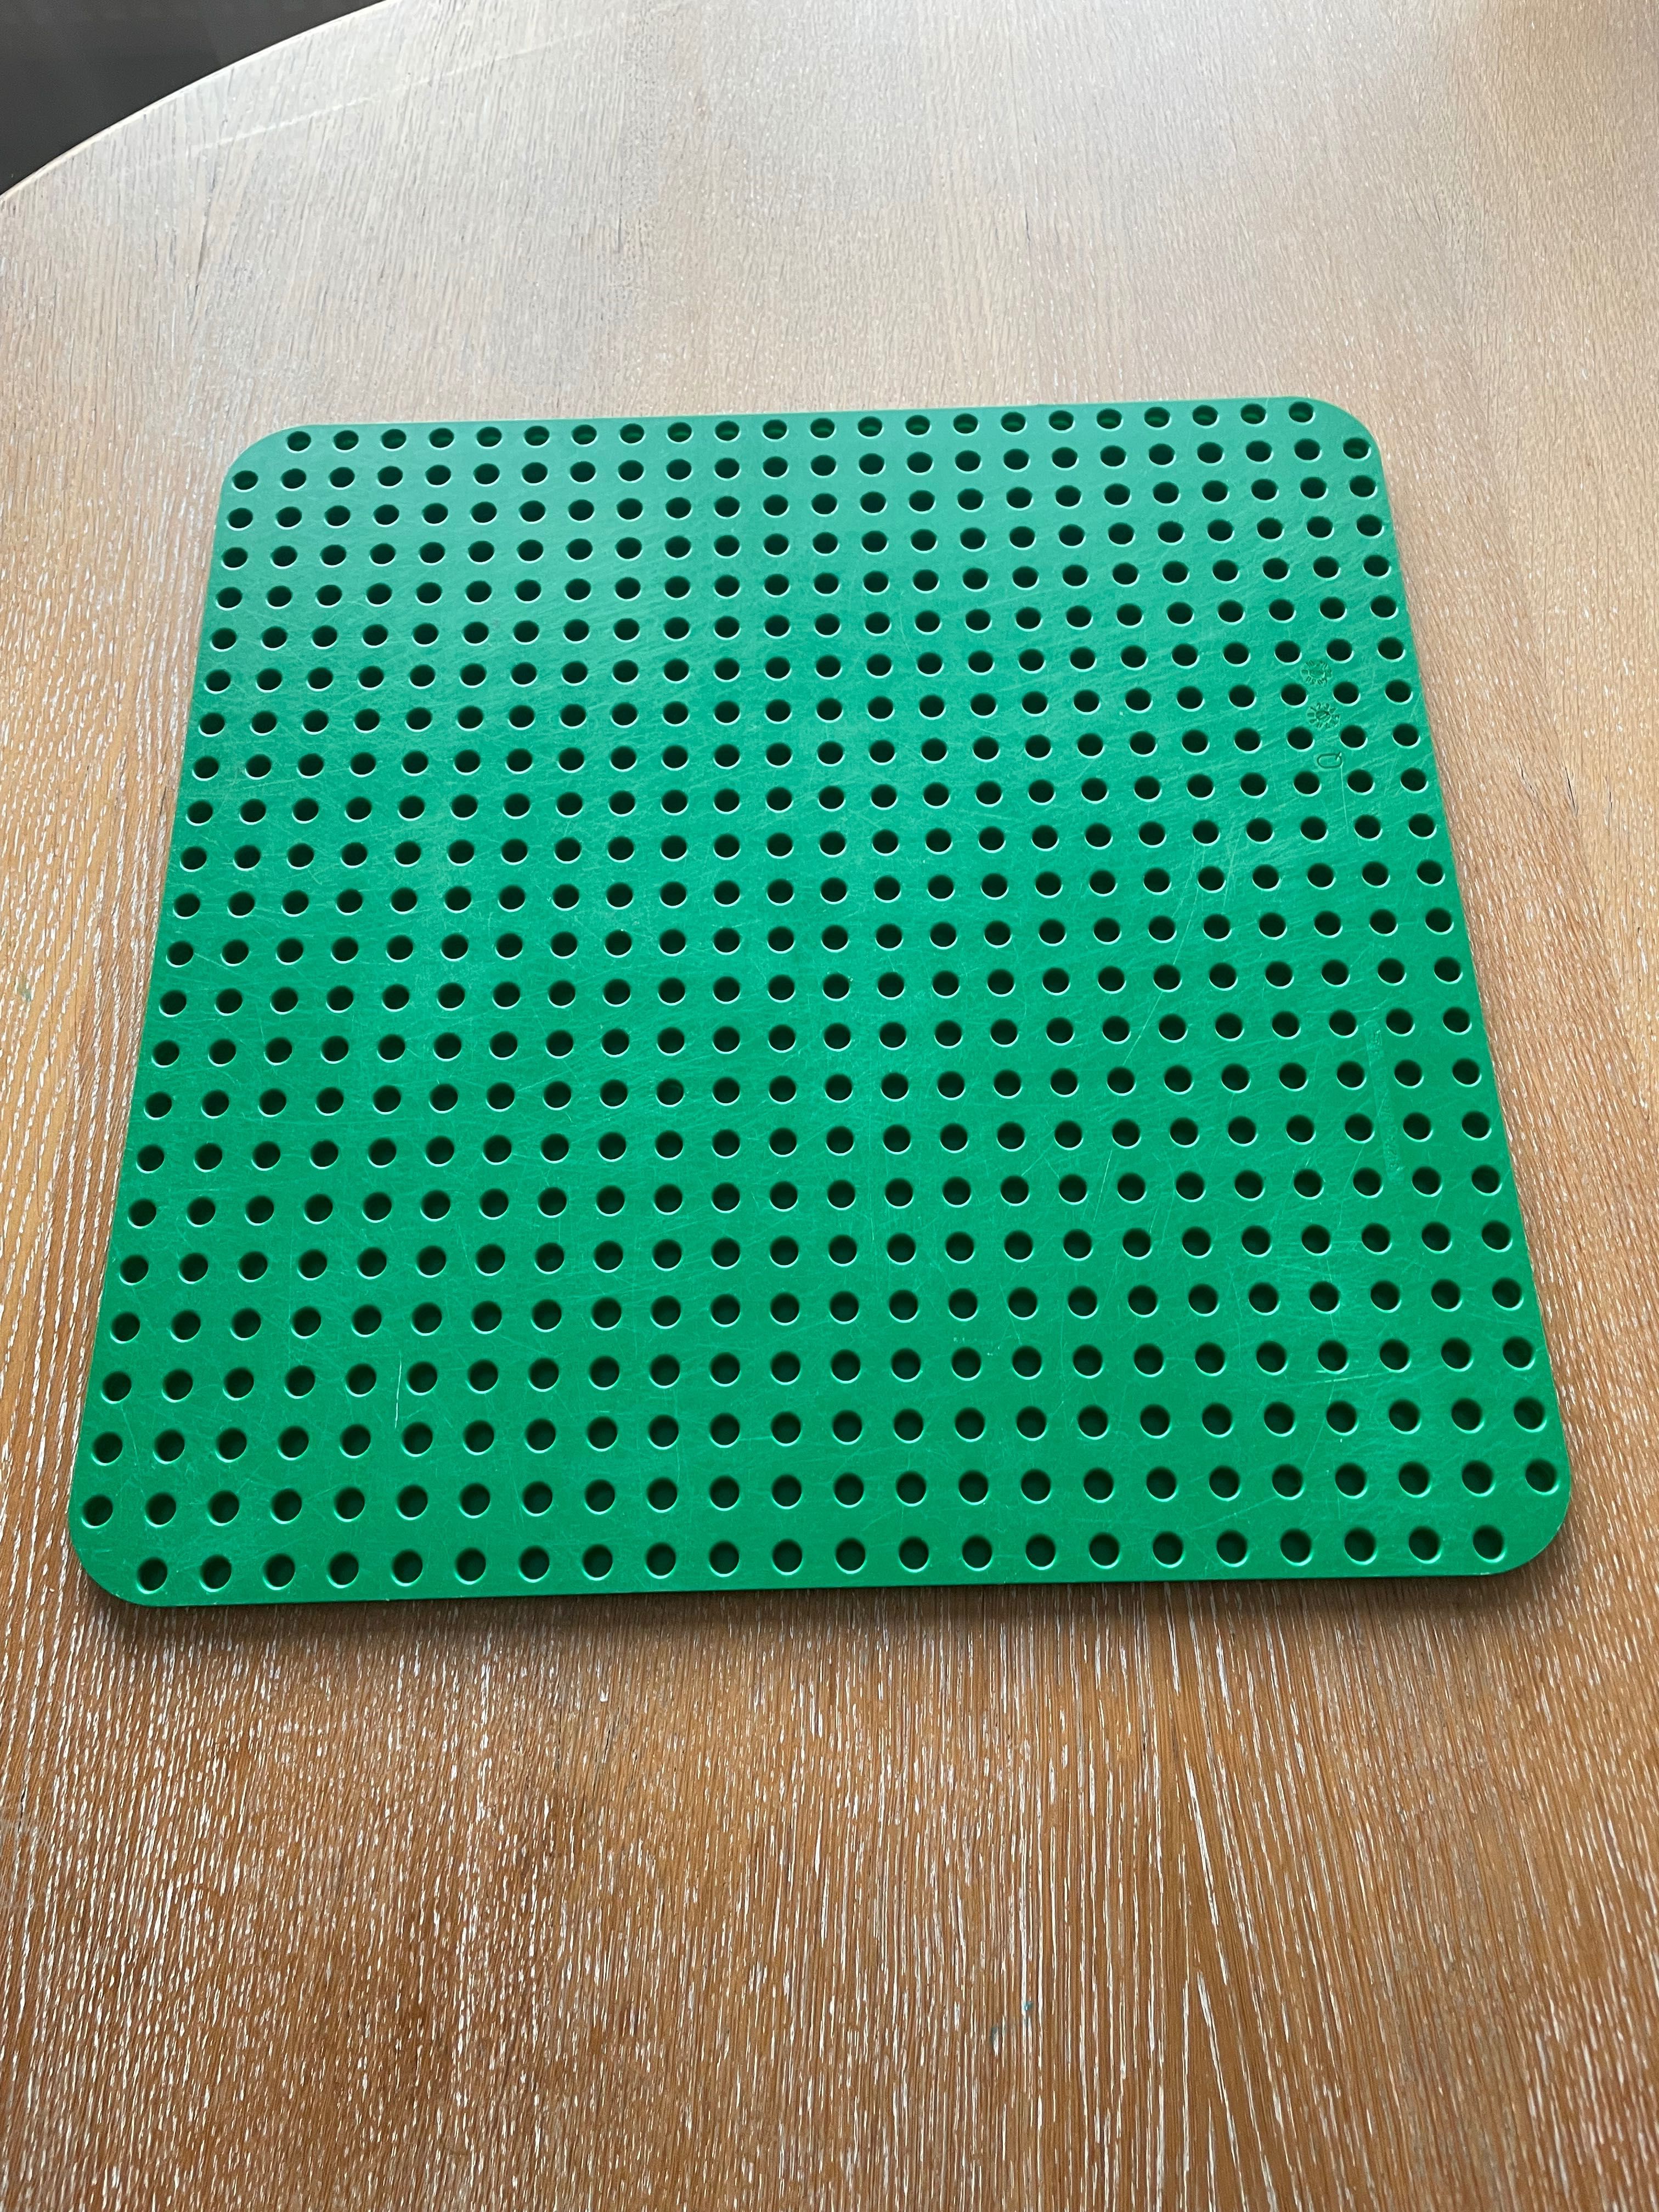 Lego Duplo 10980 płyta konstrukcyjna